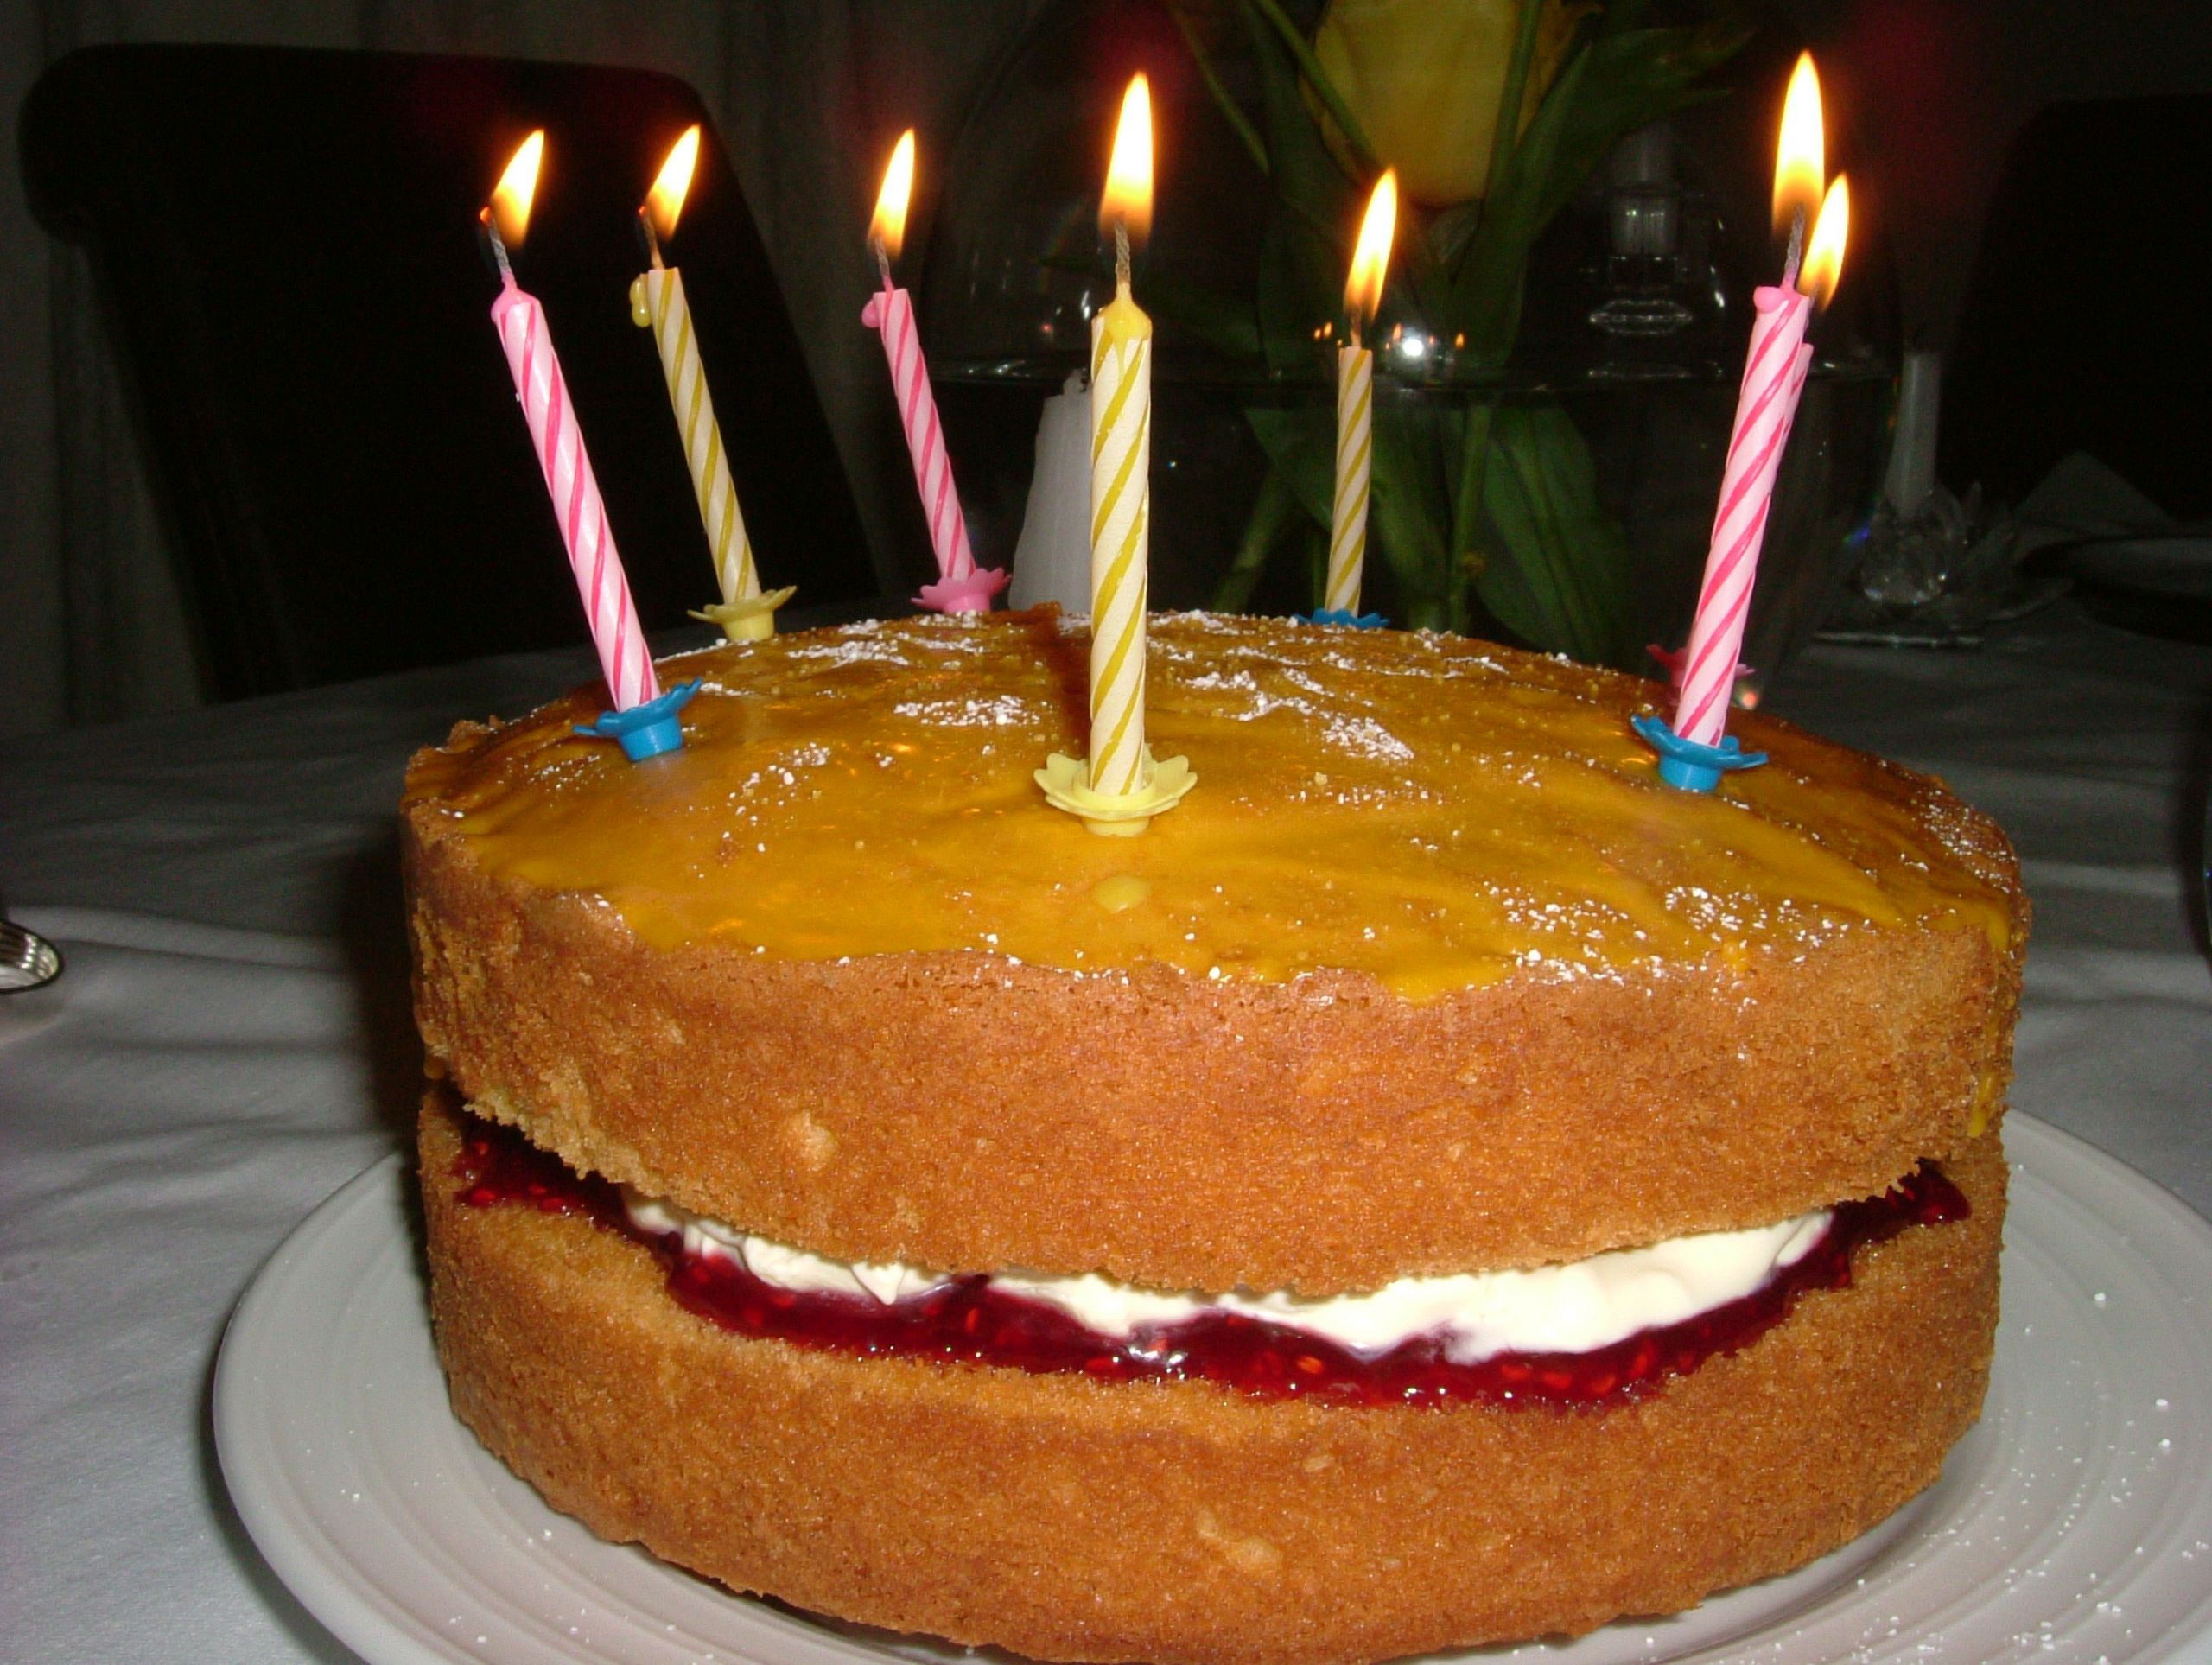 The Best Birthday Cake
 The Best Birthday Cake in the World – The Glutton s Kitchen